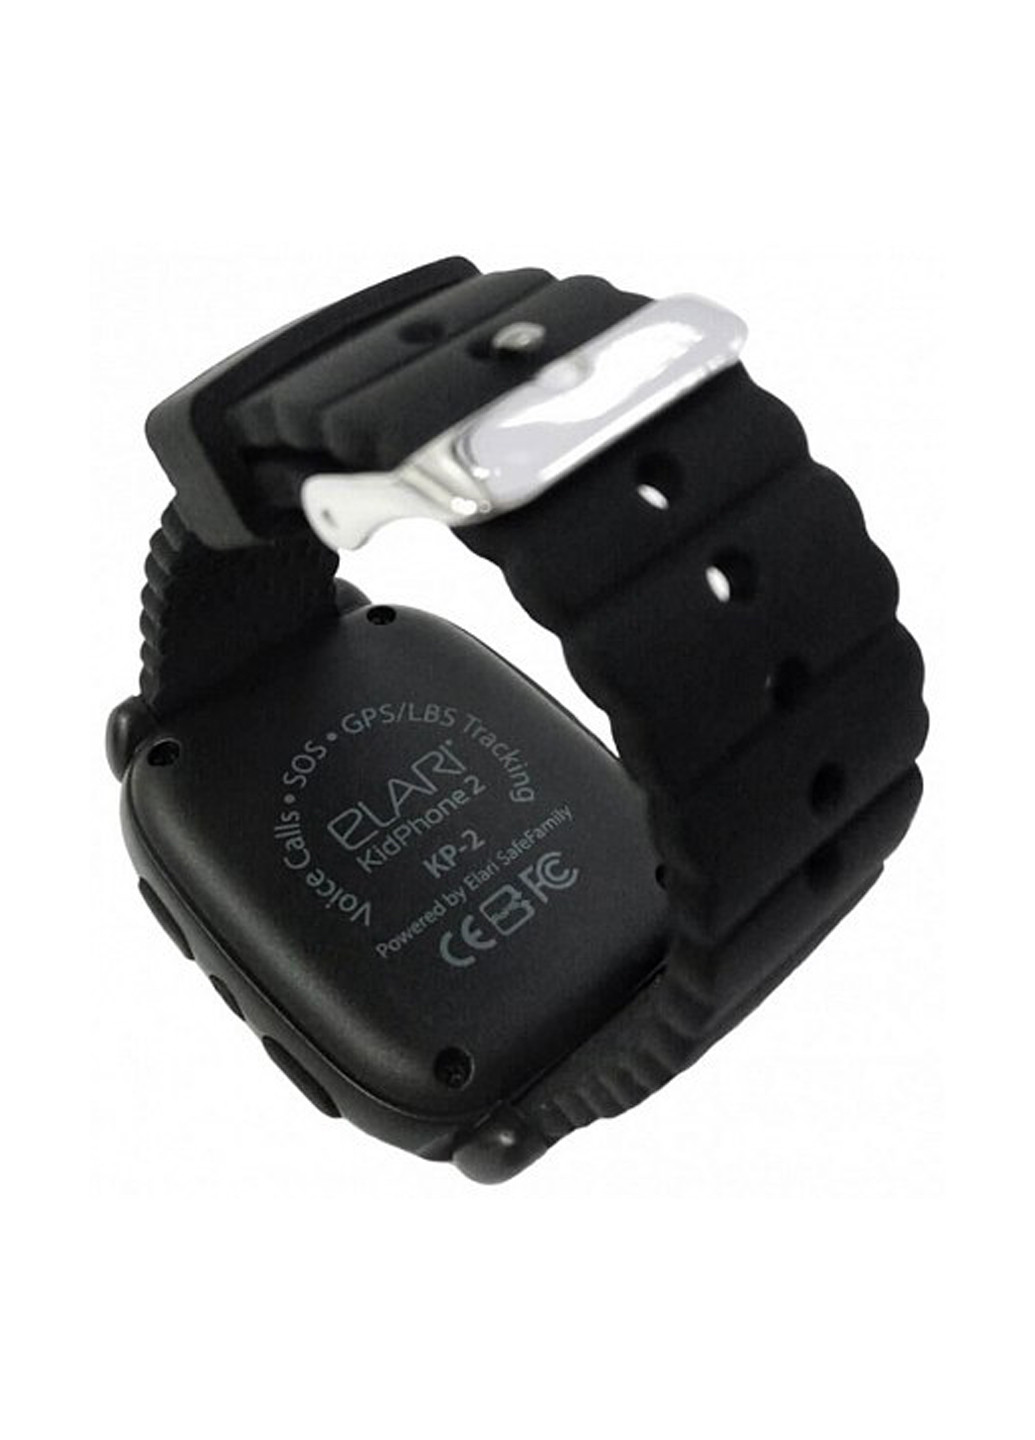 Дитячі смарт-годинник KidPhone 2 Black з GPS-трекером (KP-2B) Elari детские смарт-часы elari kidphone 2 black с gps-трекером (kp-2b) (132853824)